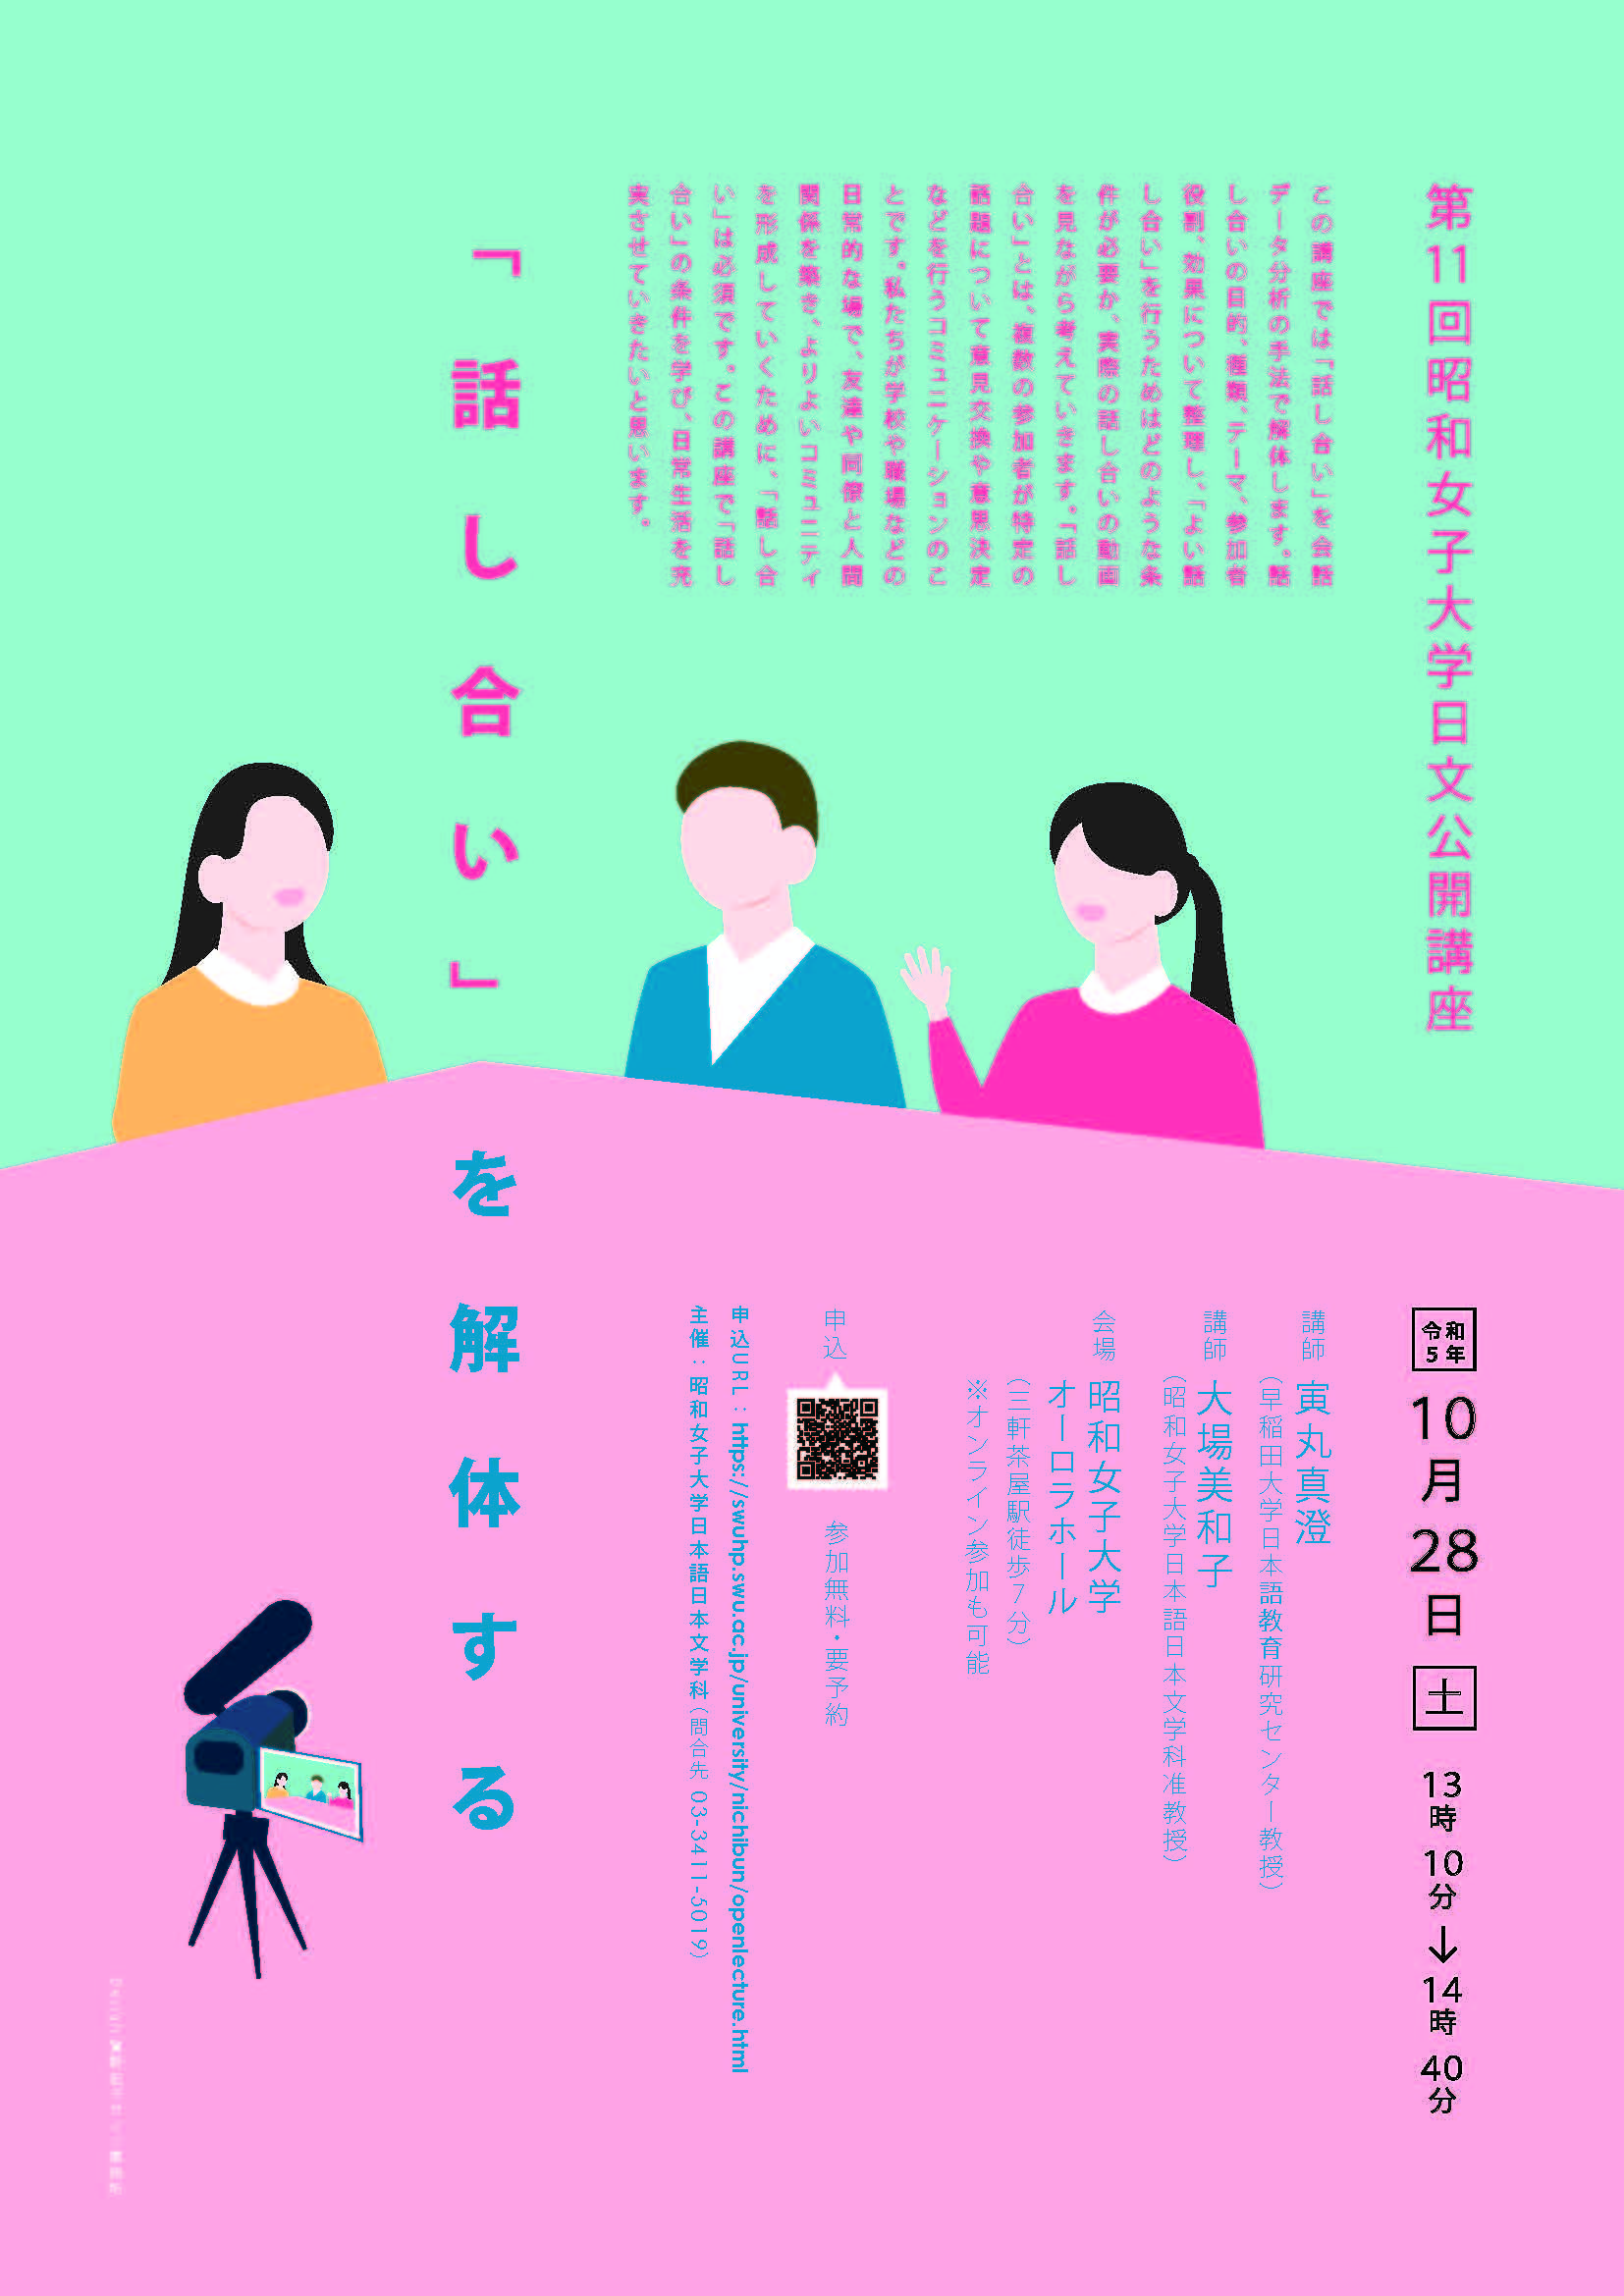 昭和女子大学日文公開講座「話し合い」を解体する